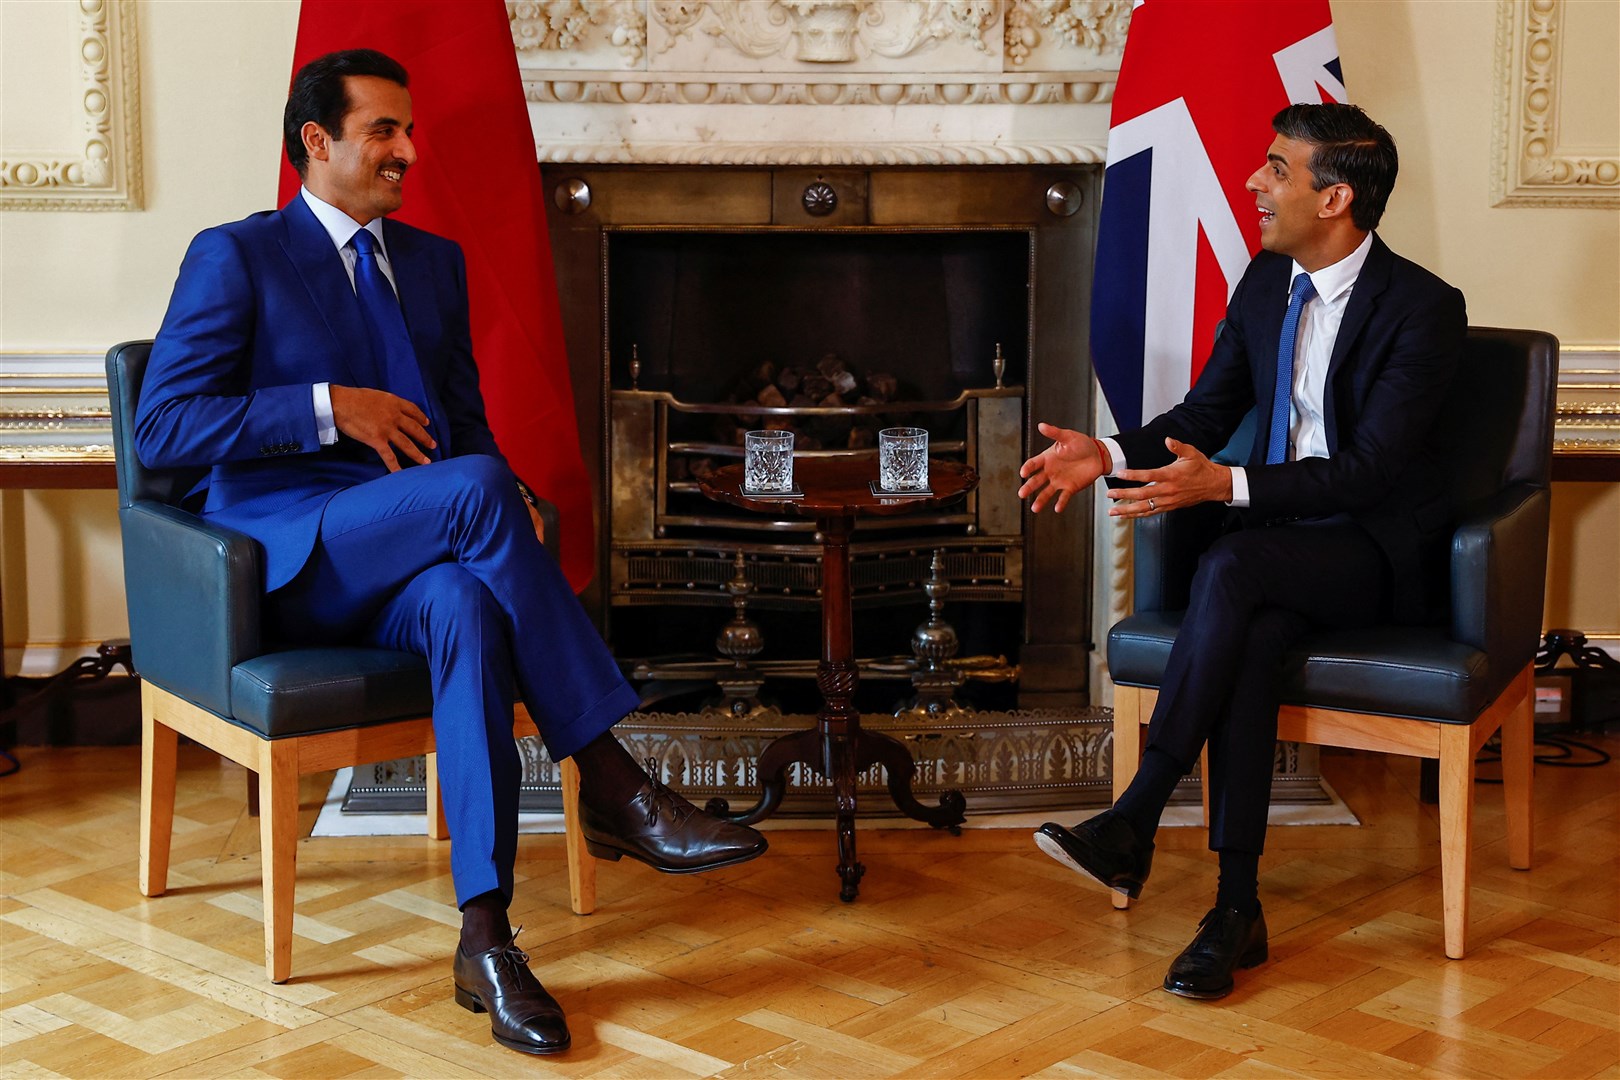 Prime Minister Rishi Sunak, right, meets the Emir of Qatar, Sheikh Tamim bin Hamad Al Thani at 10 Downing Street (Peter Nicholls/PA)